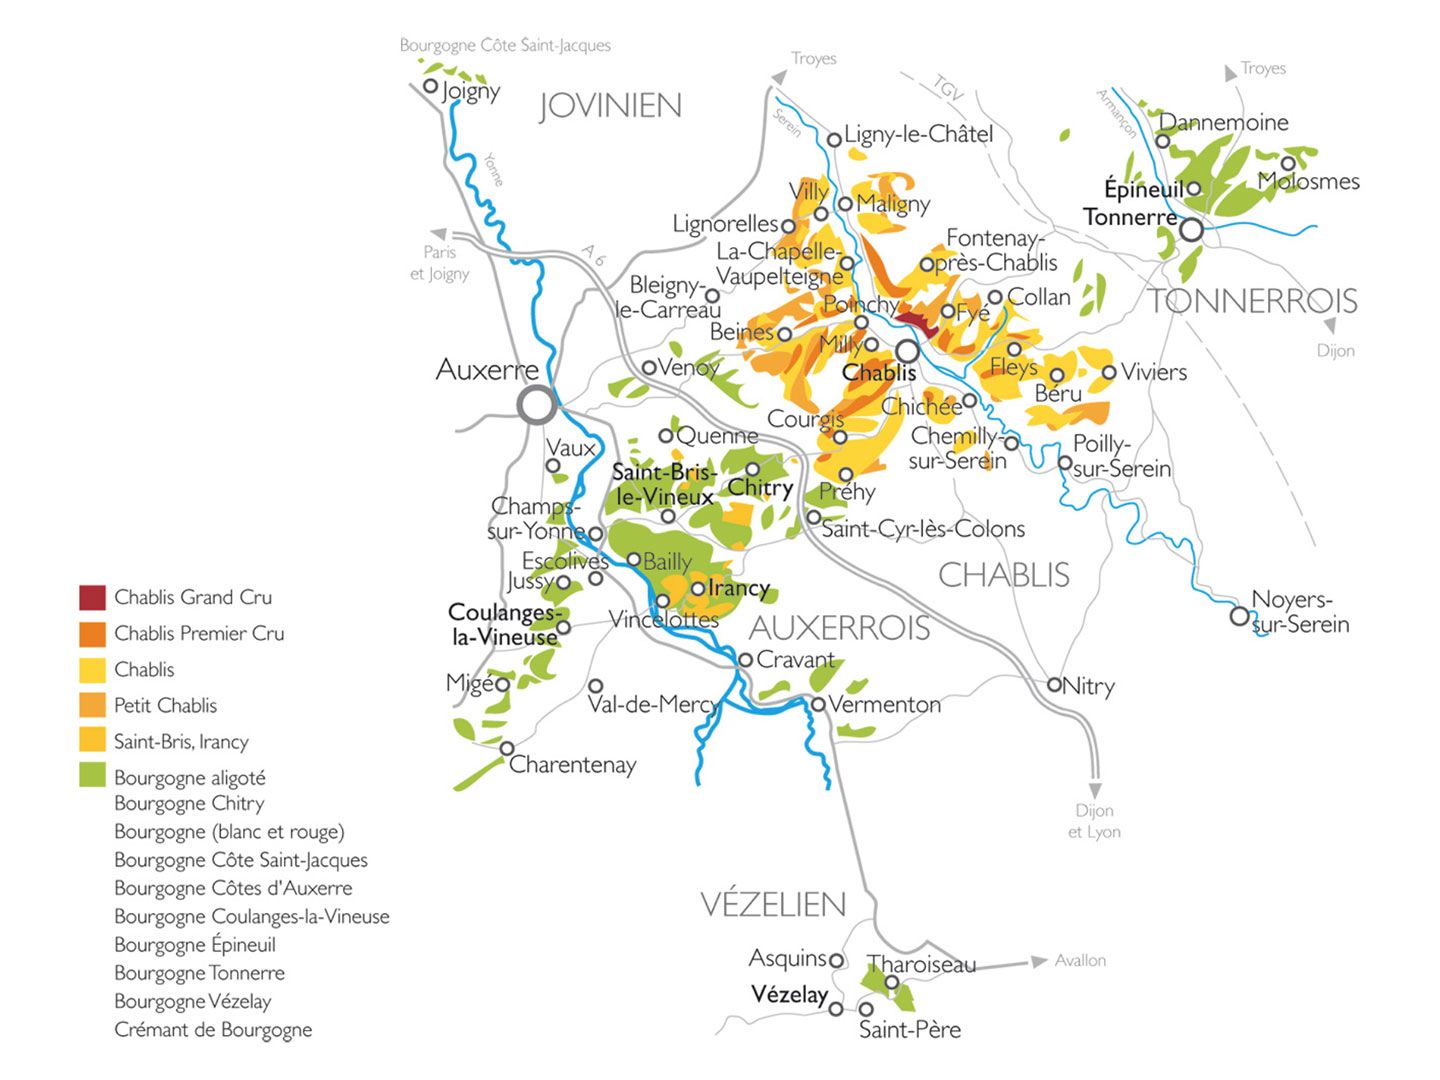 Bourgogne Tonnerre, saiba mais sobre essa região da Borgonha